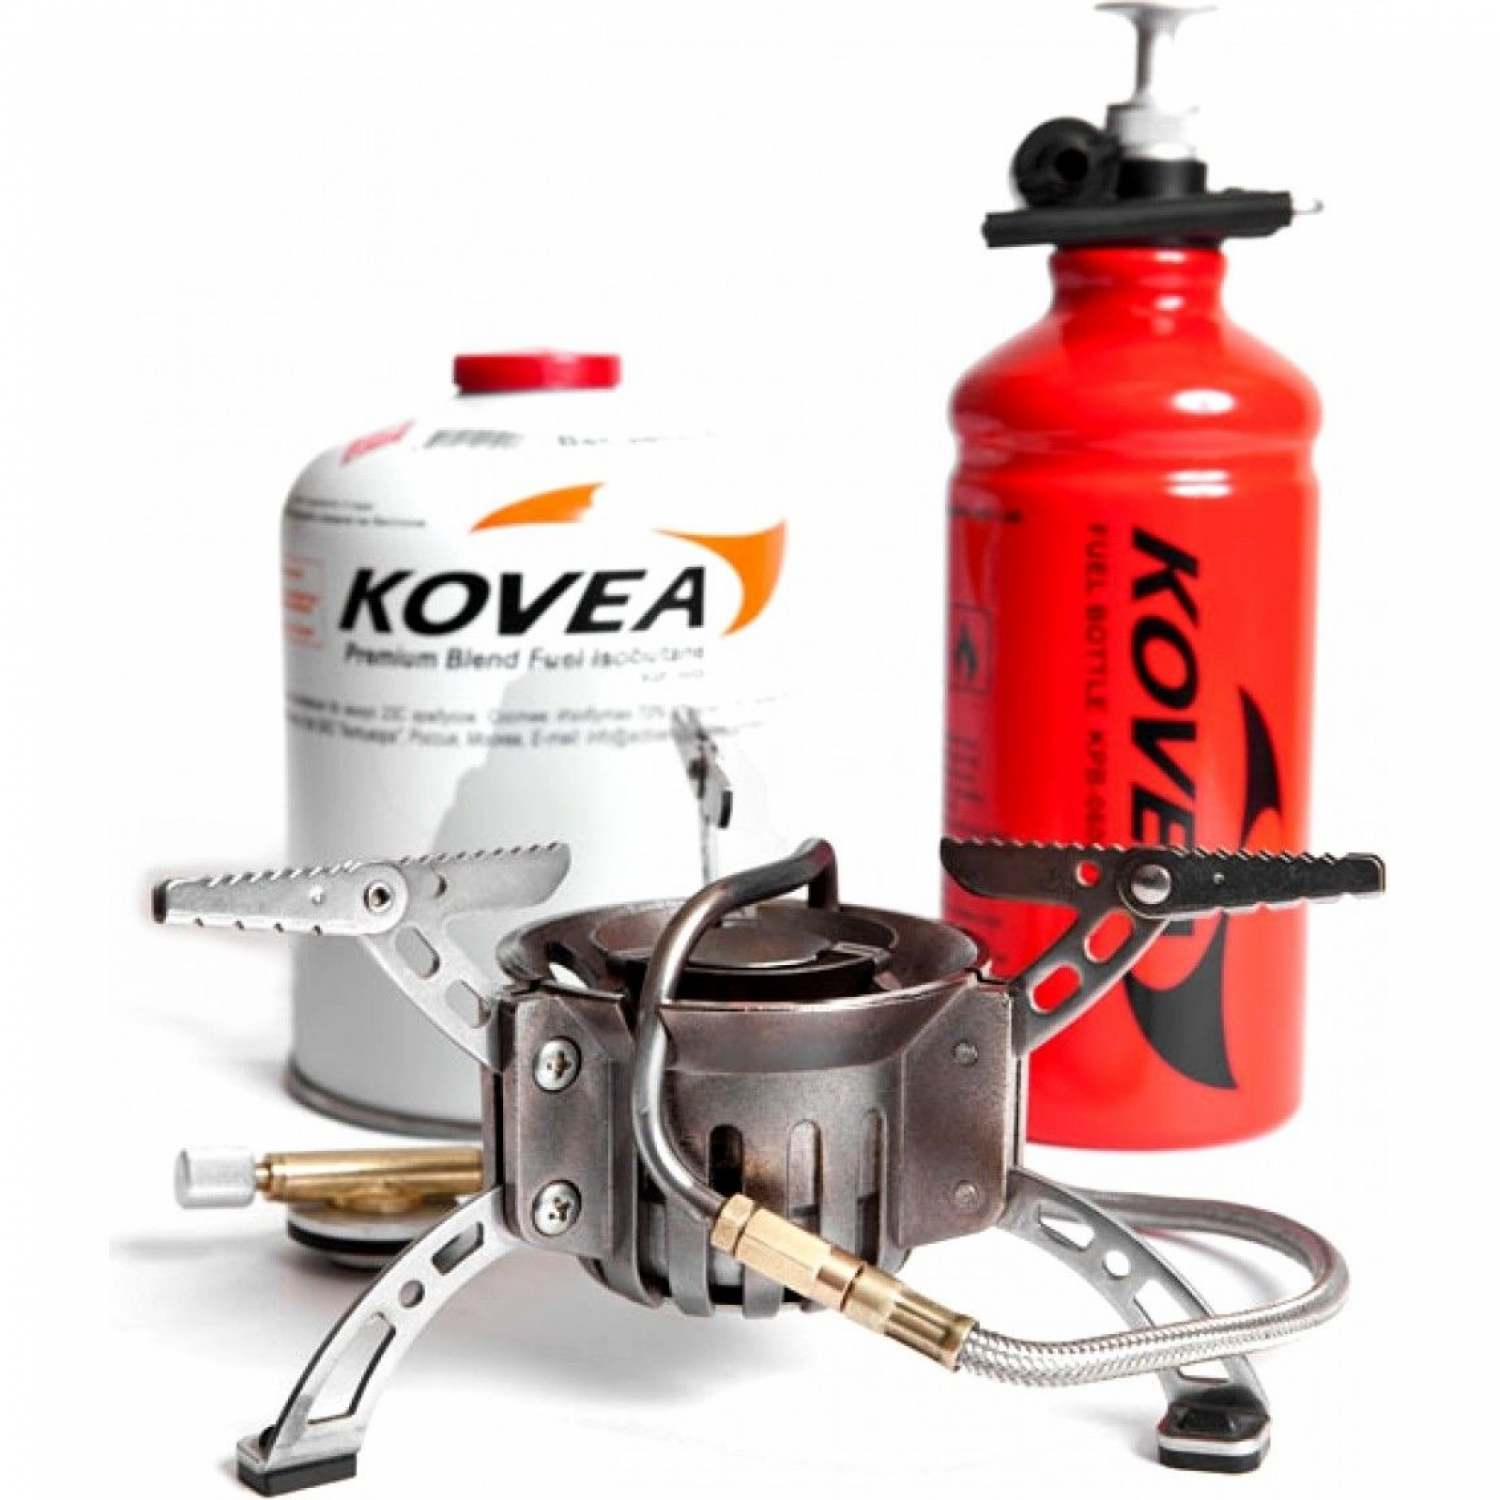 Мультитопливная горелка KOVEA Booster +1 KB-0603. Купить на Официальном .